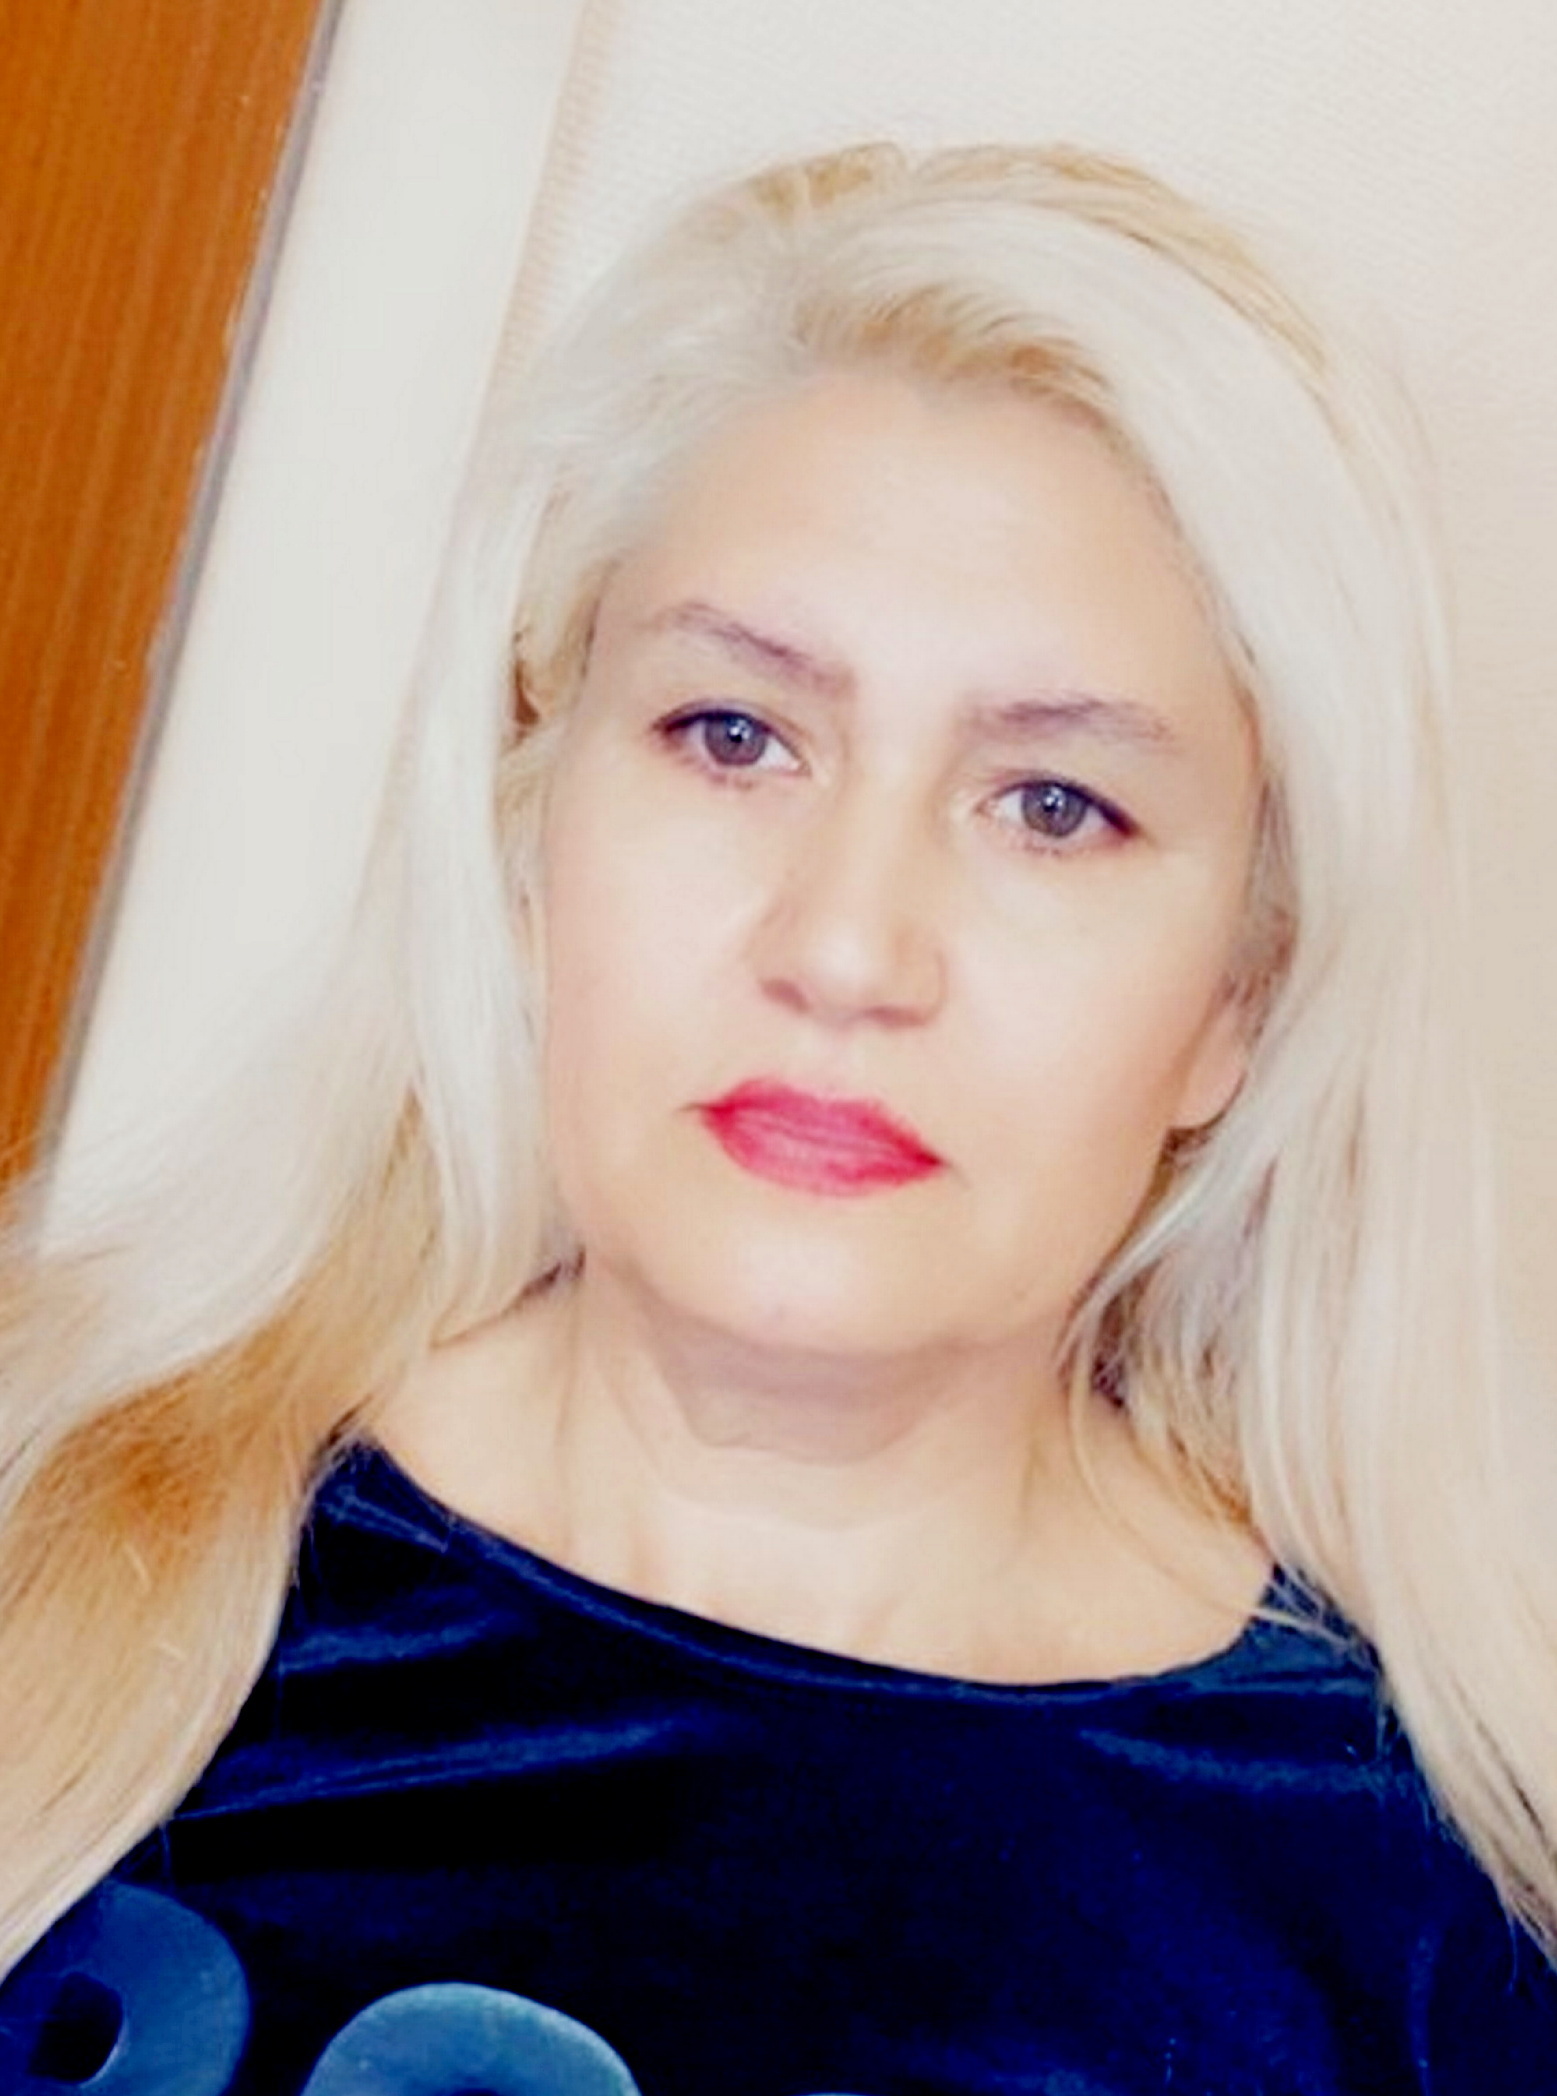 Vicala Gheorghe, 49, wurde mit schweren Verletzungen ins Krankenhaus eingeliefert, starb jedoch kurz darauf